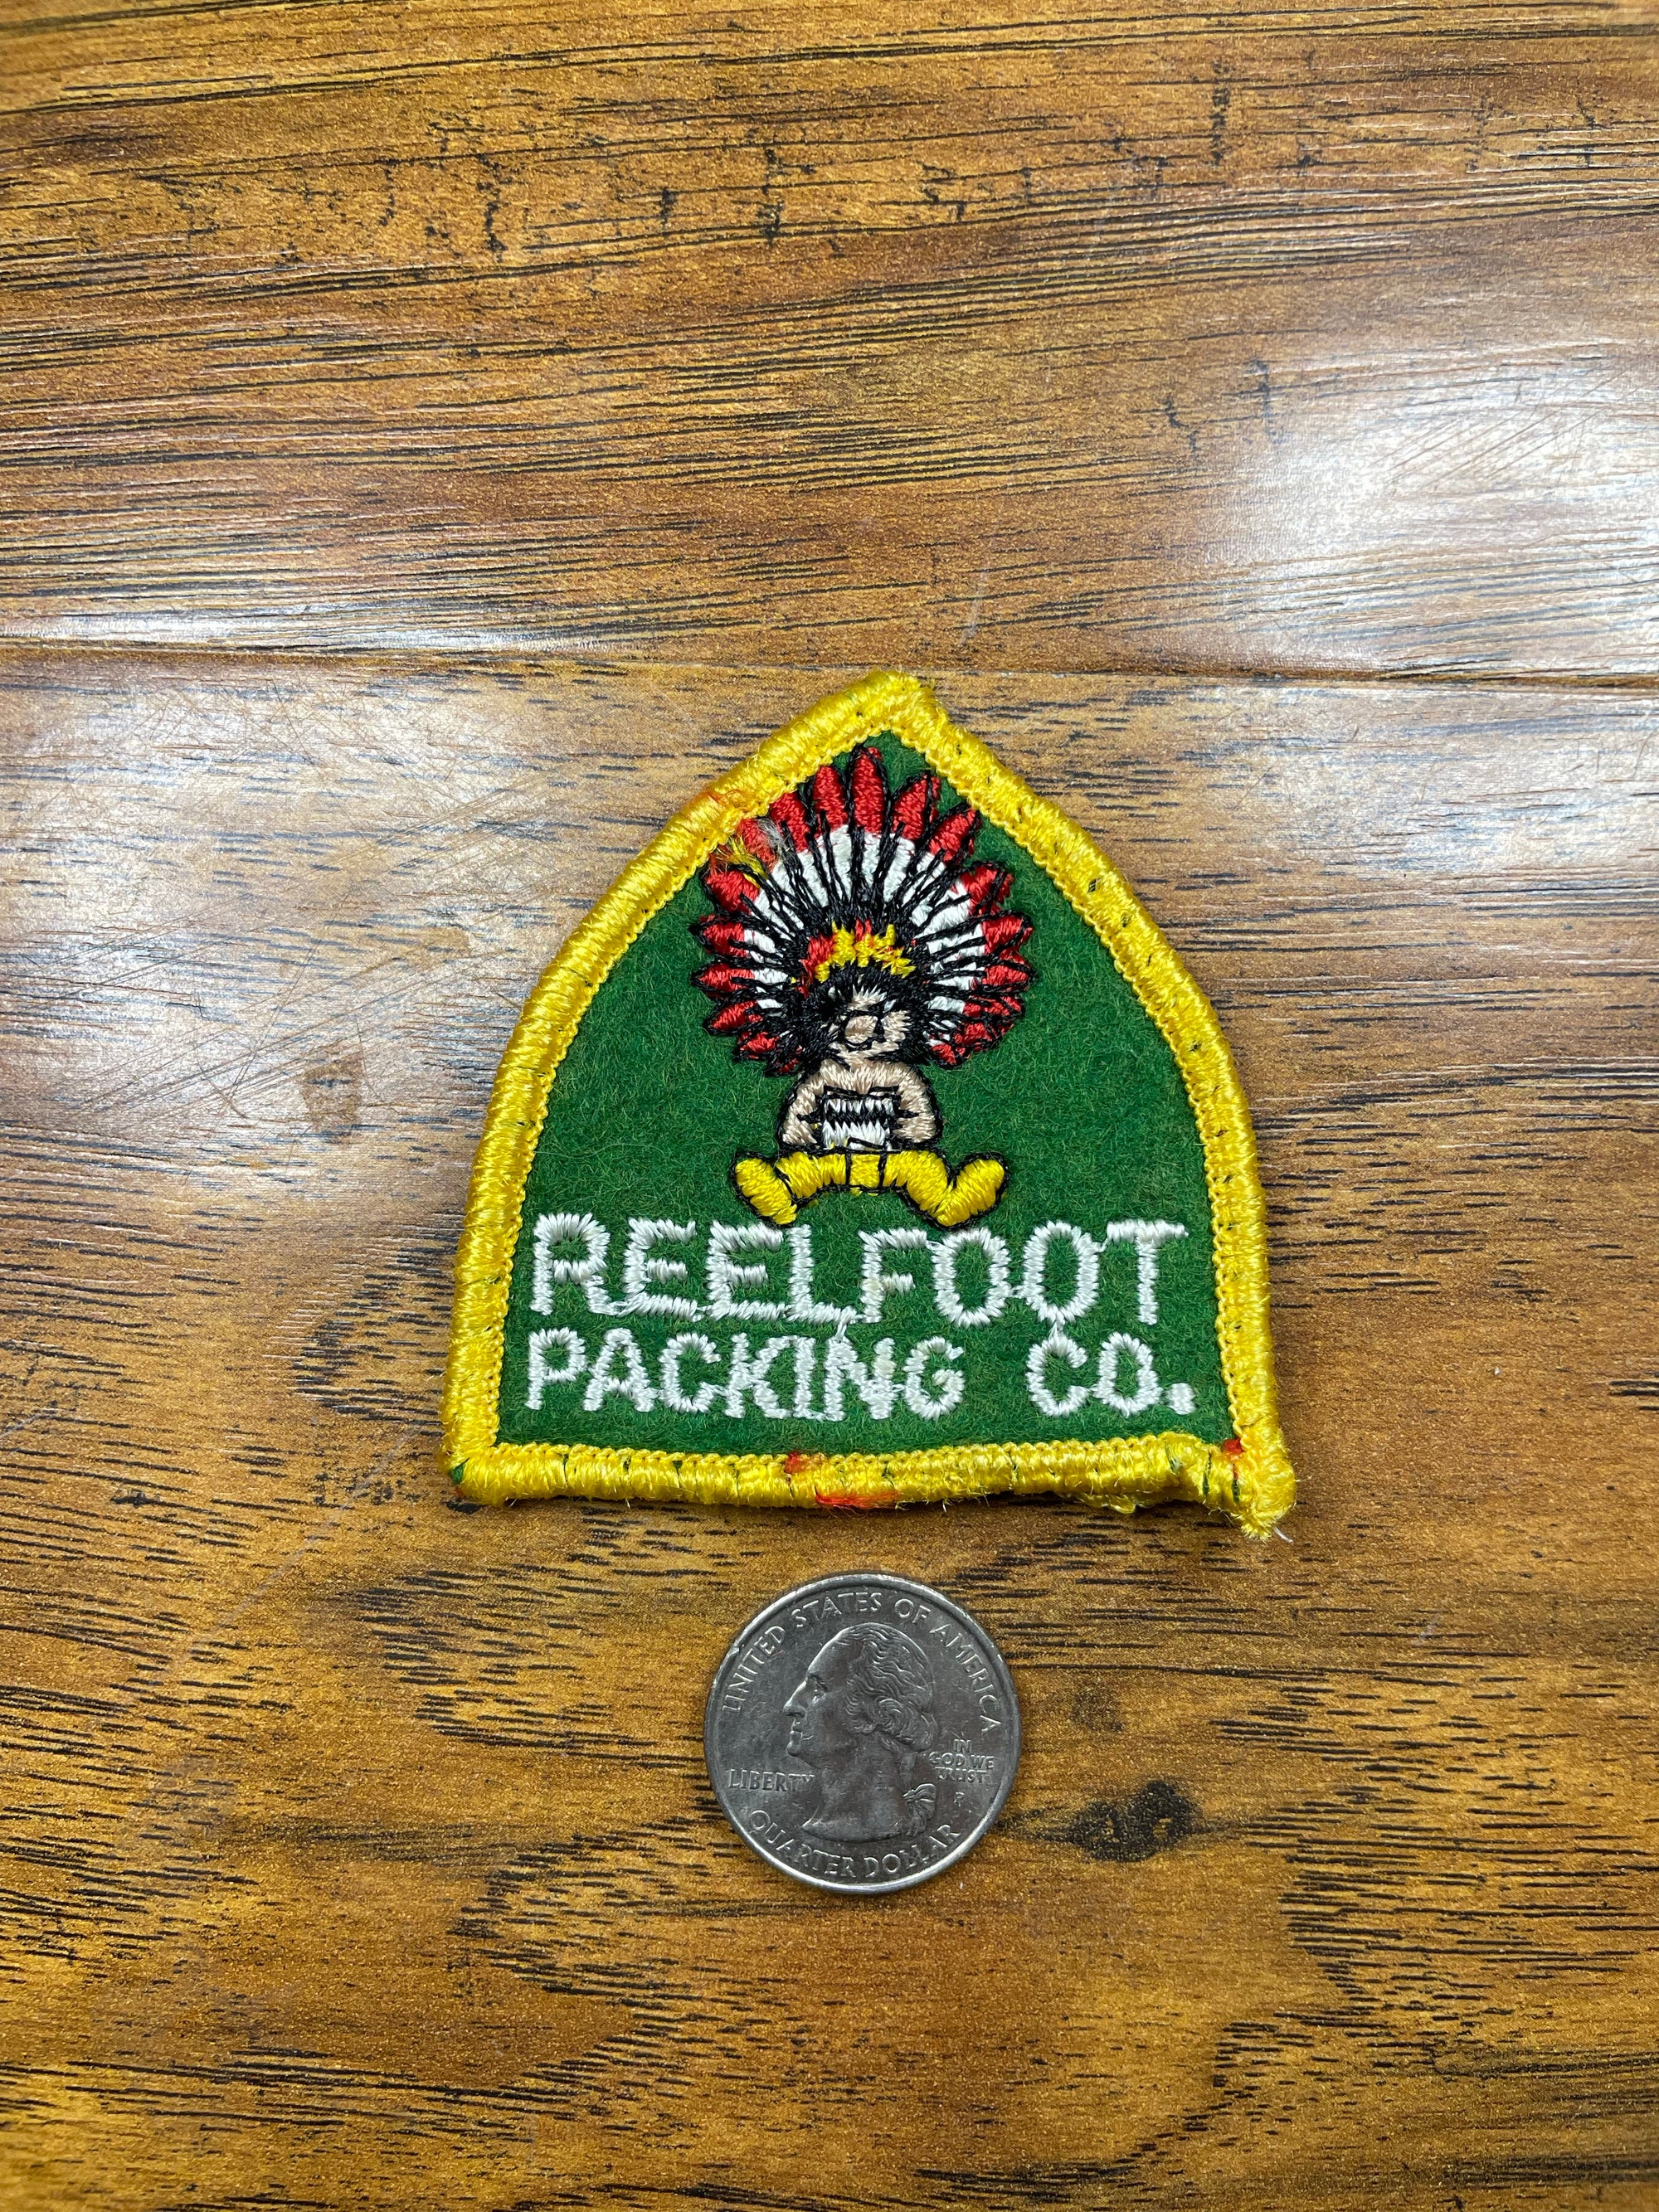 Vintage Reel foot Packing Co